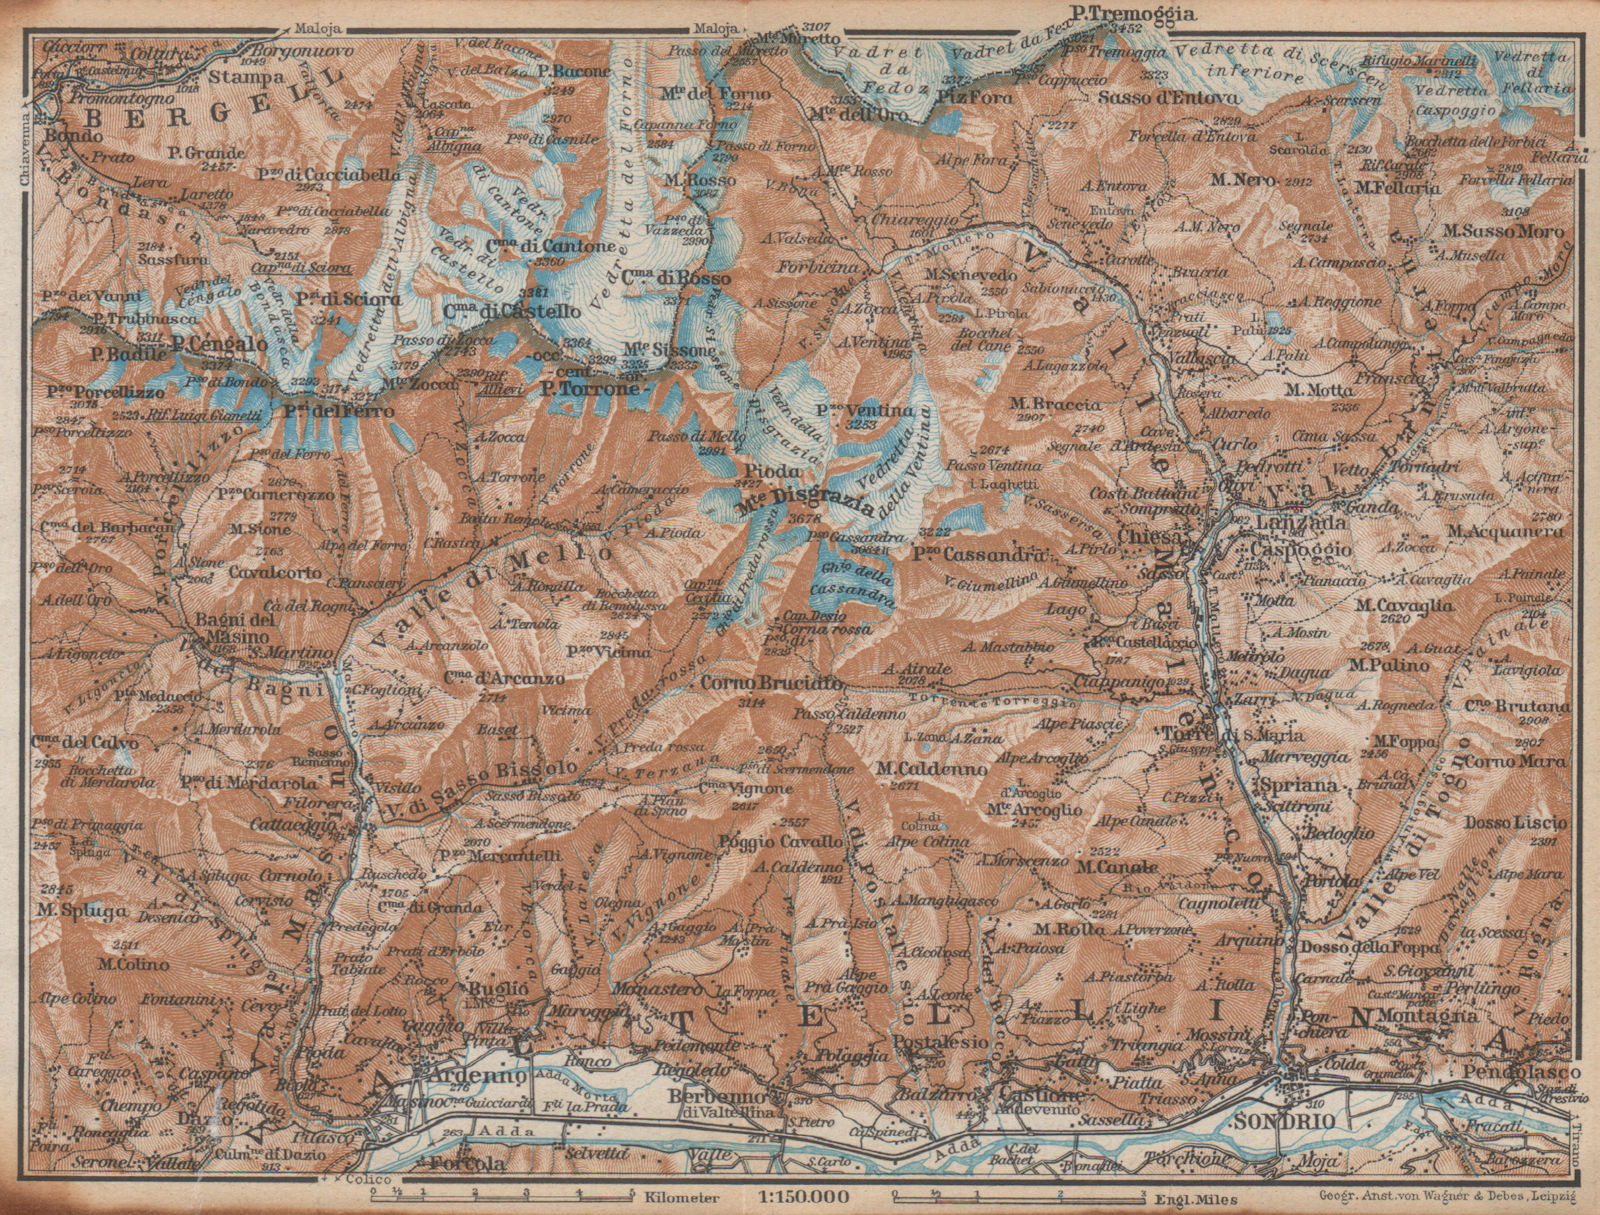 VAL MASINO/BREGAGLIA ALPS. Disgrazia Caspoggio Tellina Malenco Sondrio 1938 map